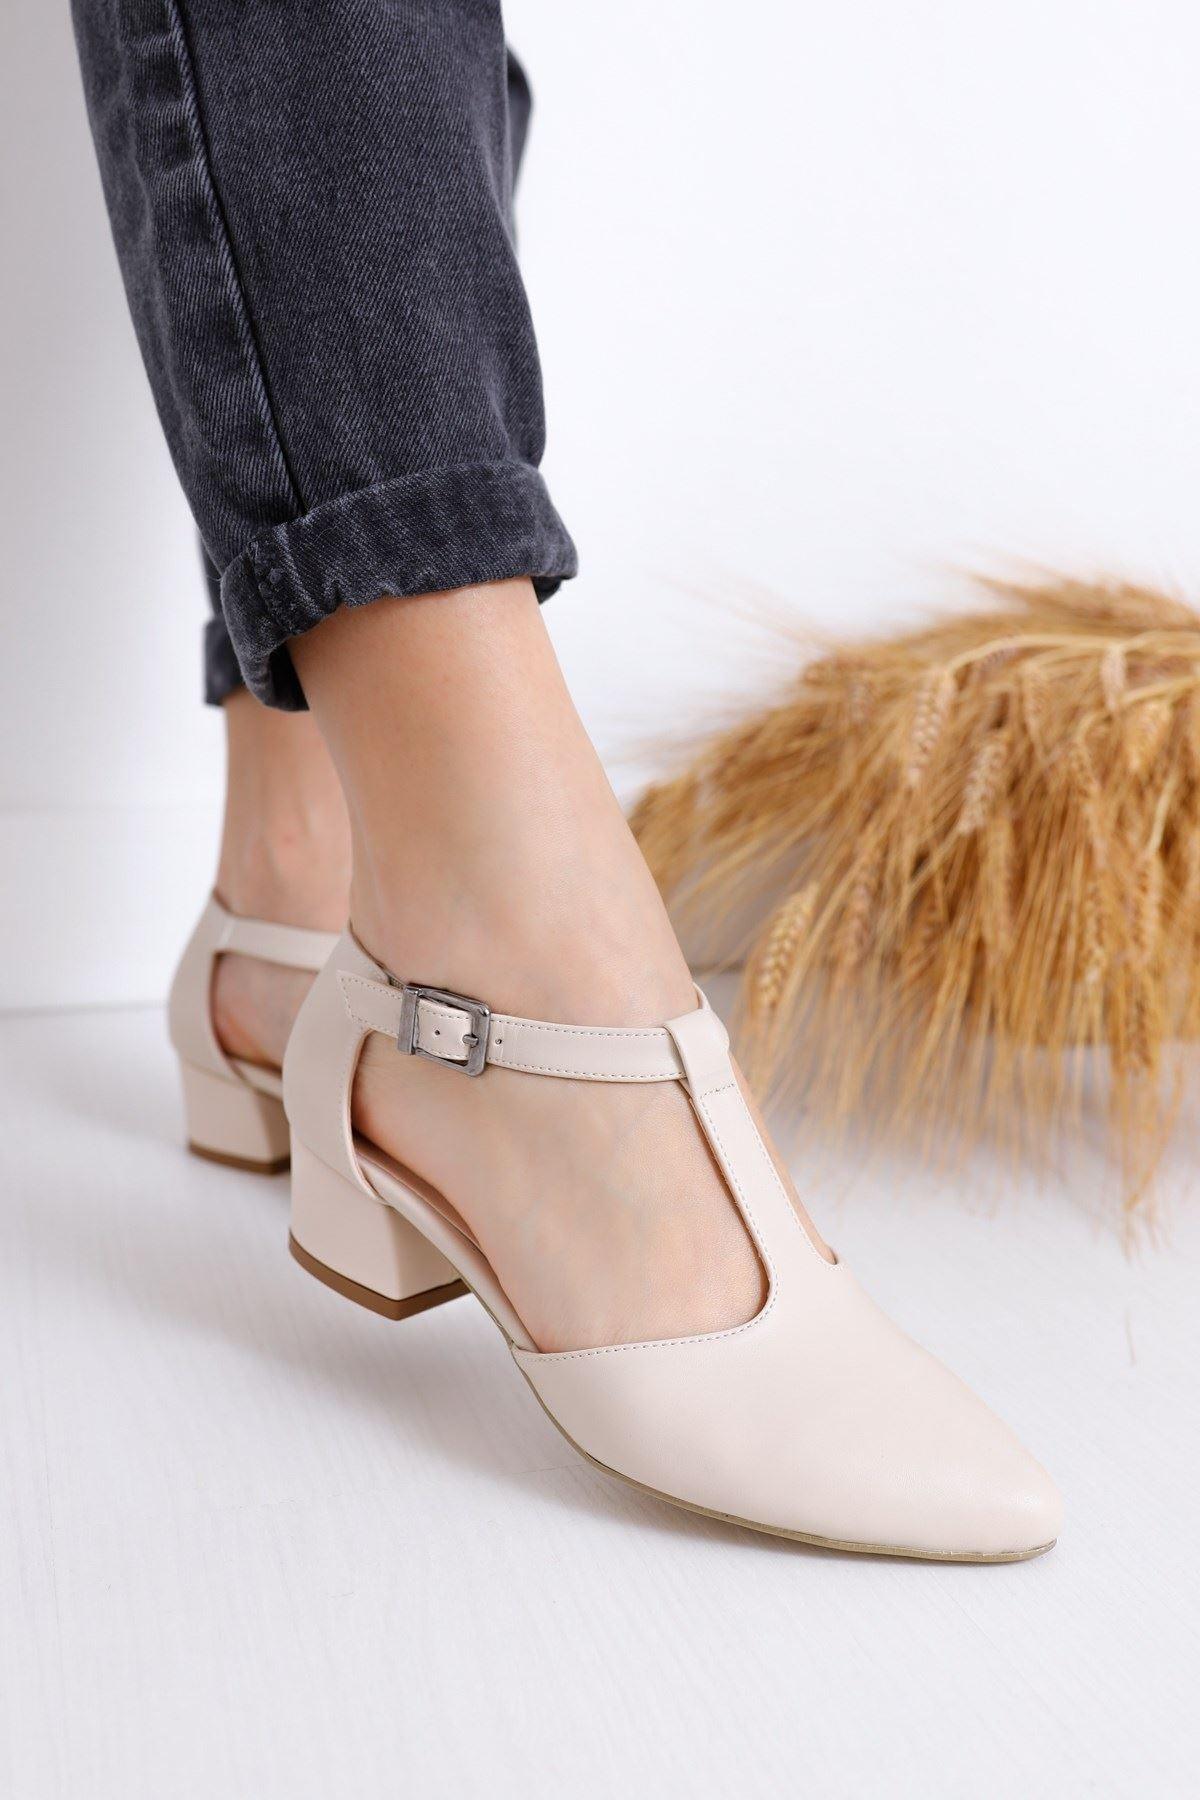 Women's Jane Heels Skin Skin Shoes - STREET MODE ™